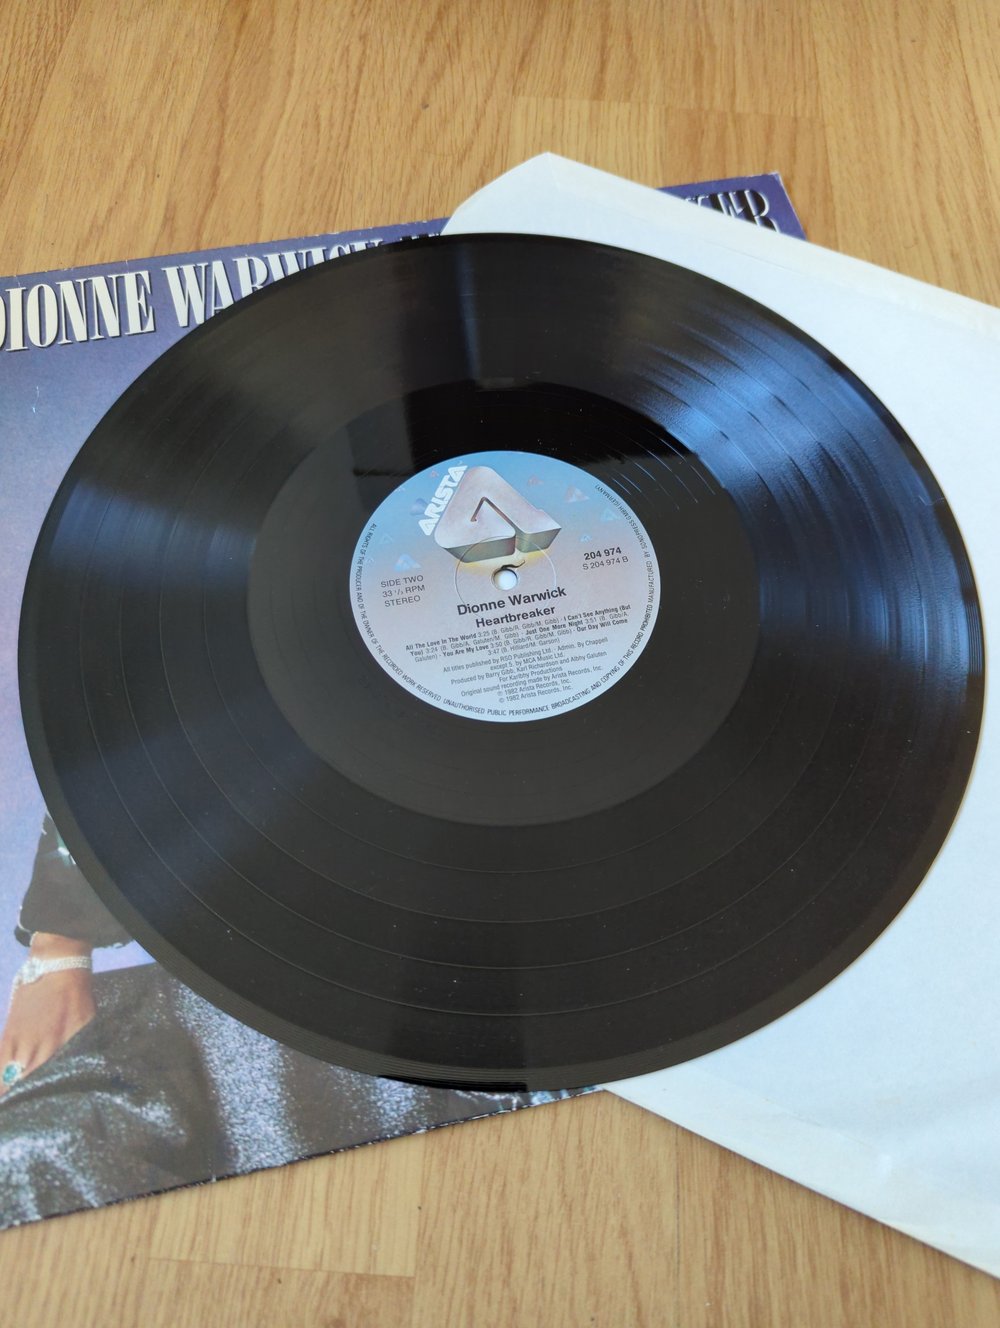 Dionne Warwick Heartbreaker Signed Vinyl